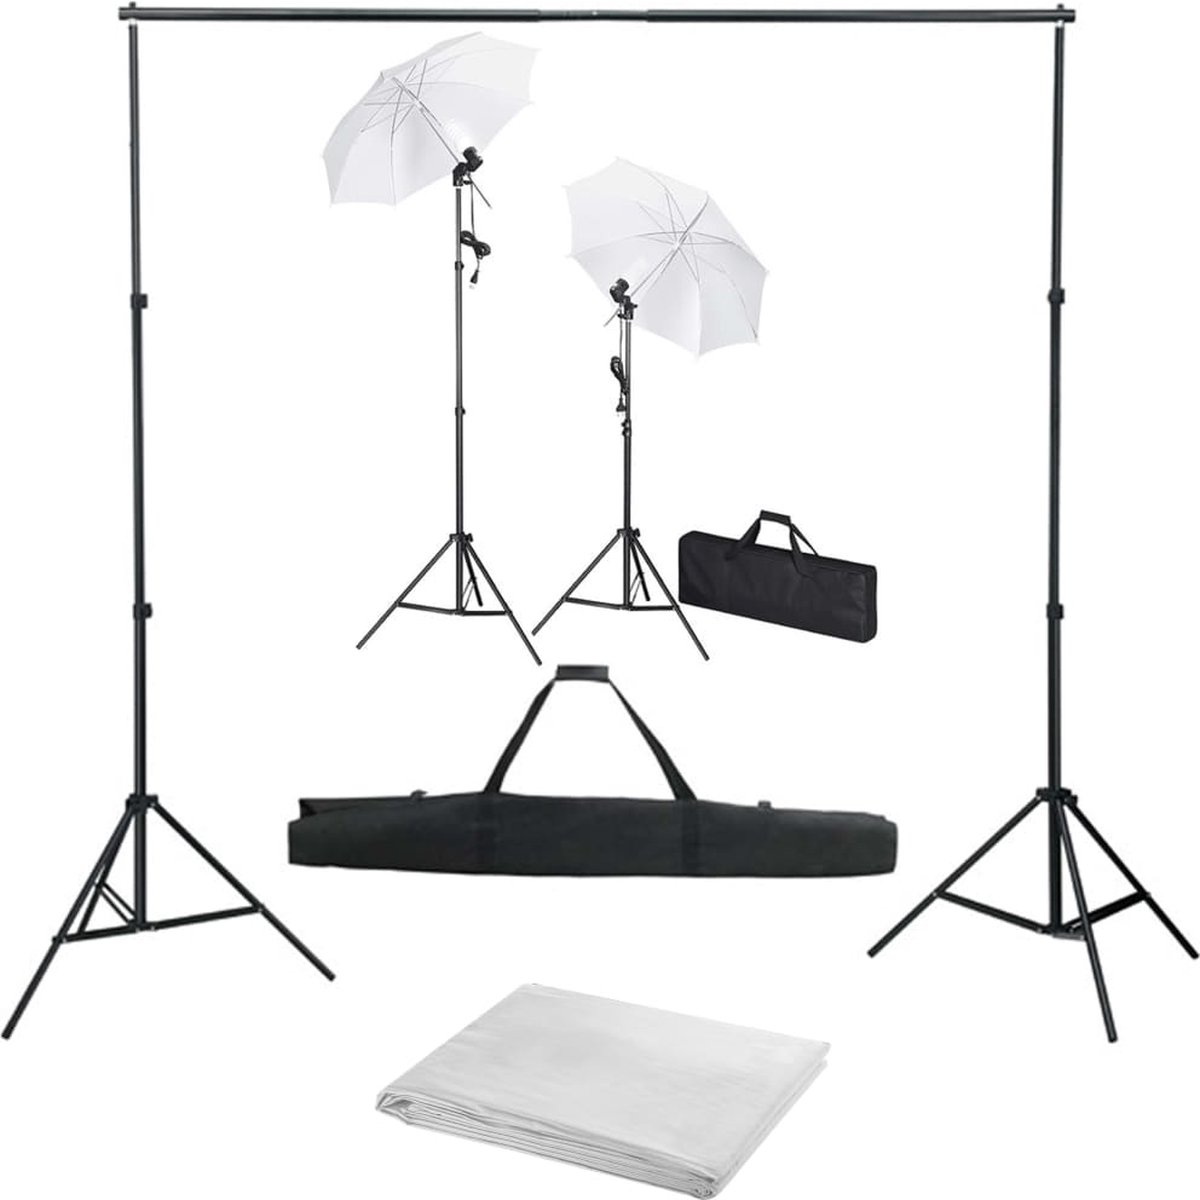 VidaLife Fotostudioset met achtergrond, lampen en paraplu's